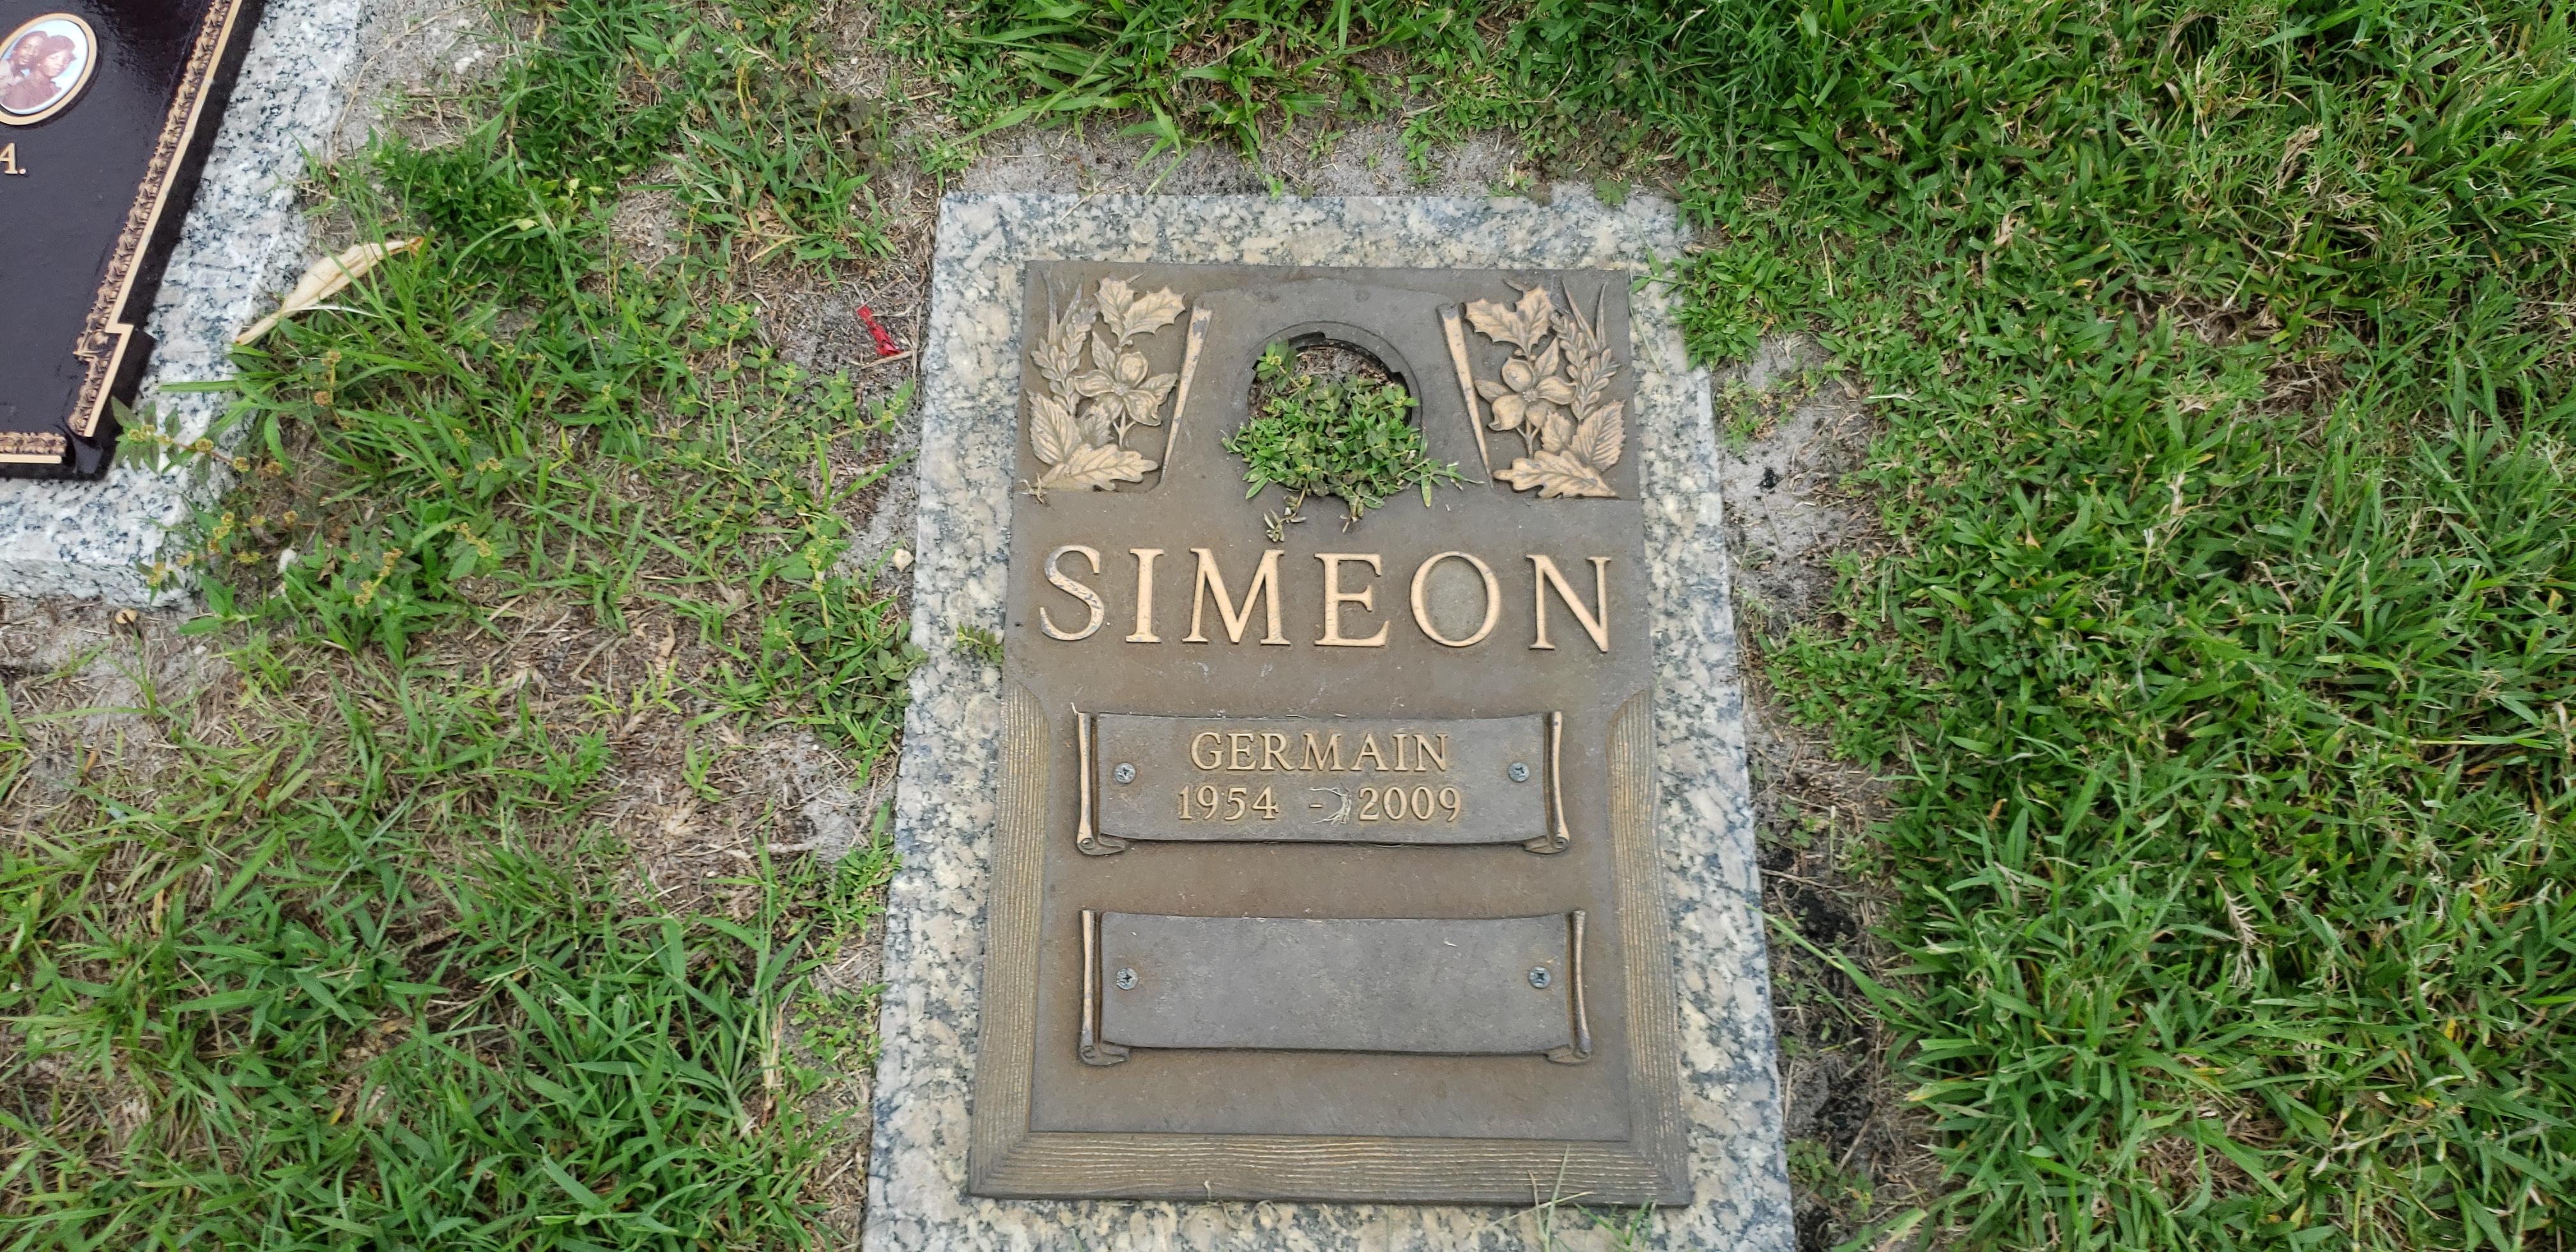 Germain Simeon